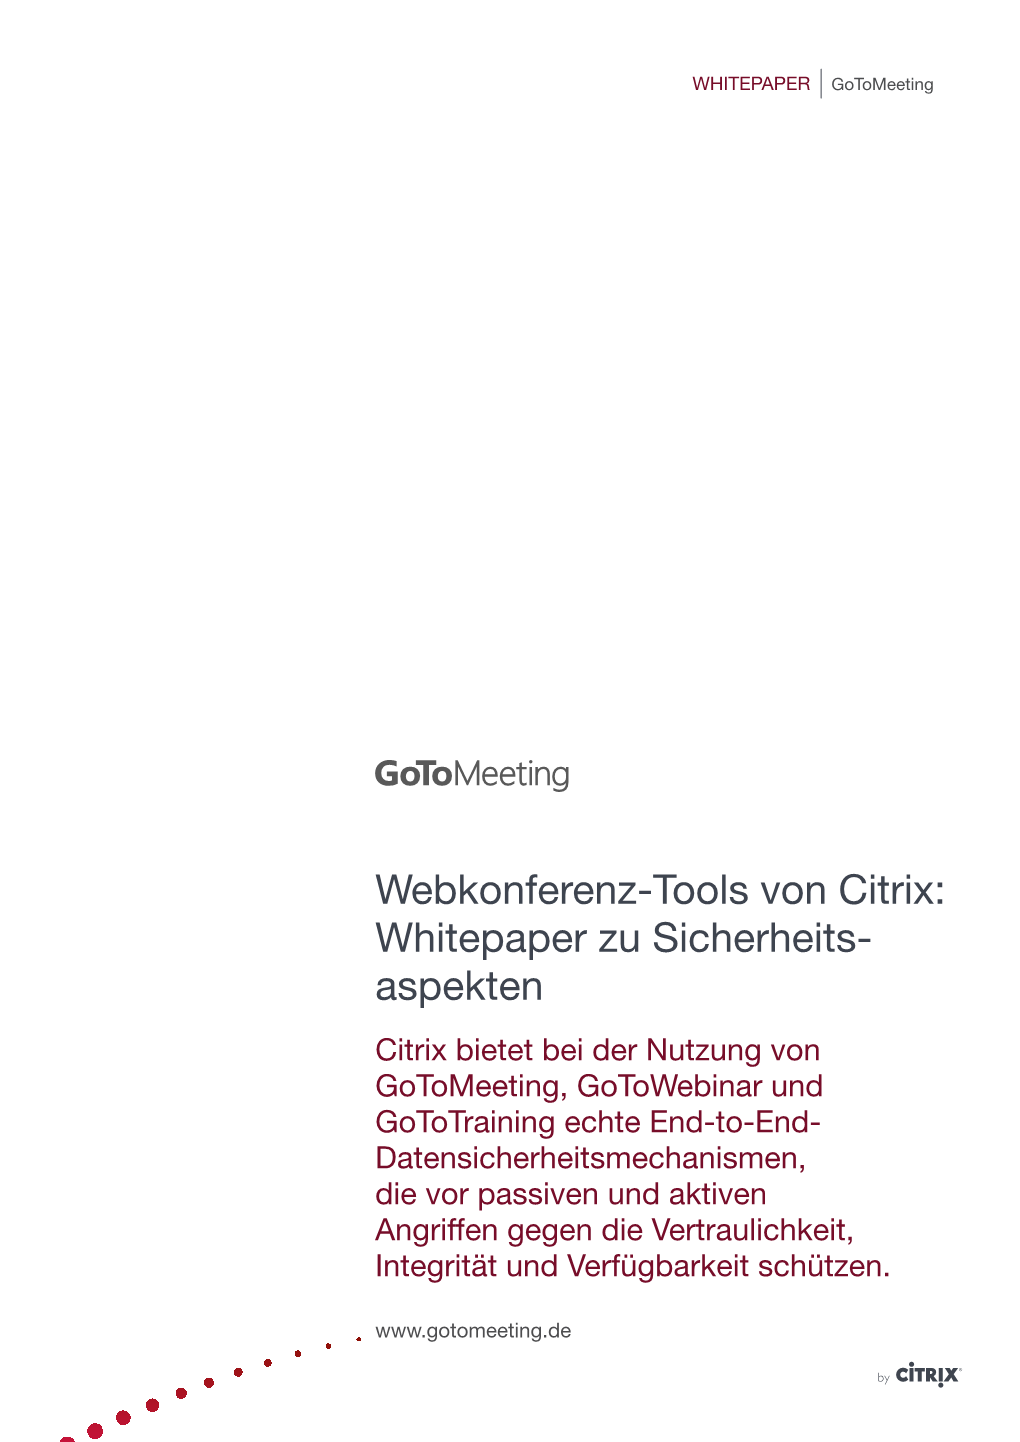 Webkonferenz-Tools Von Citrix: Whitepaper Zu Sicherheits- Aspekten